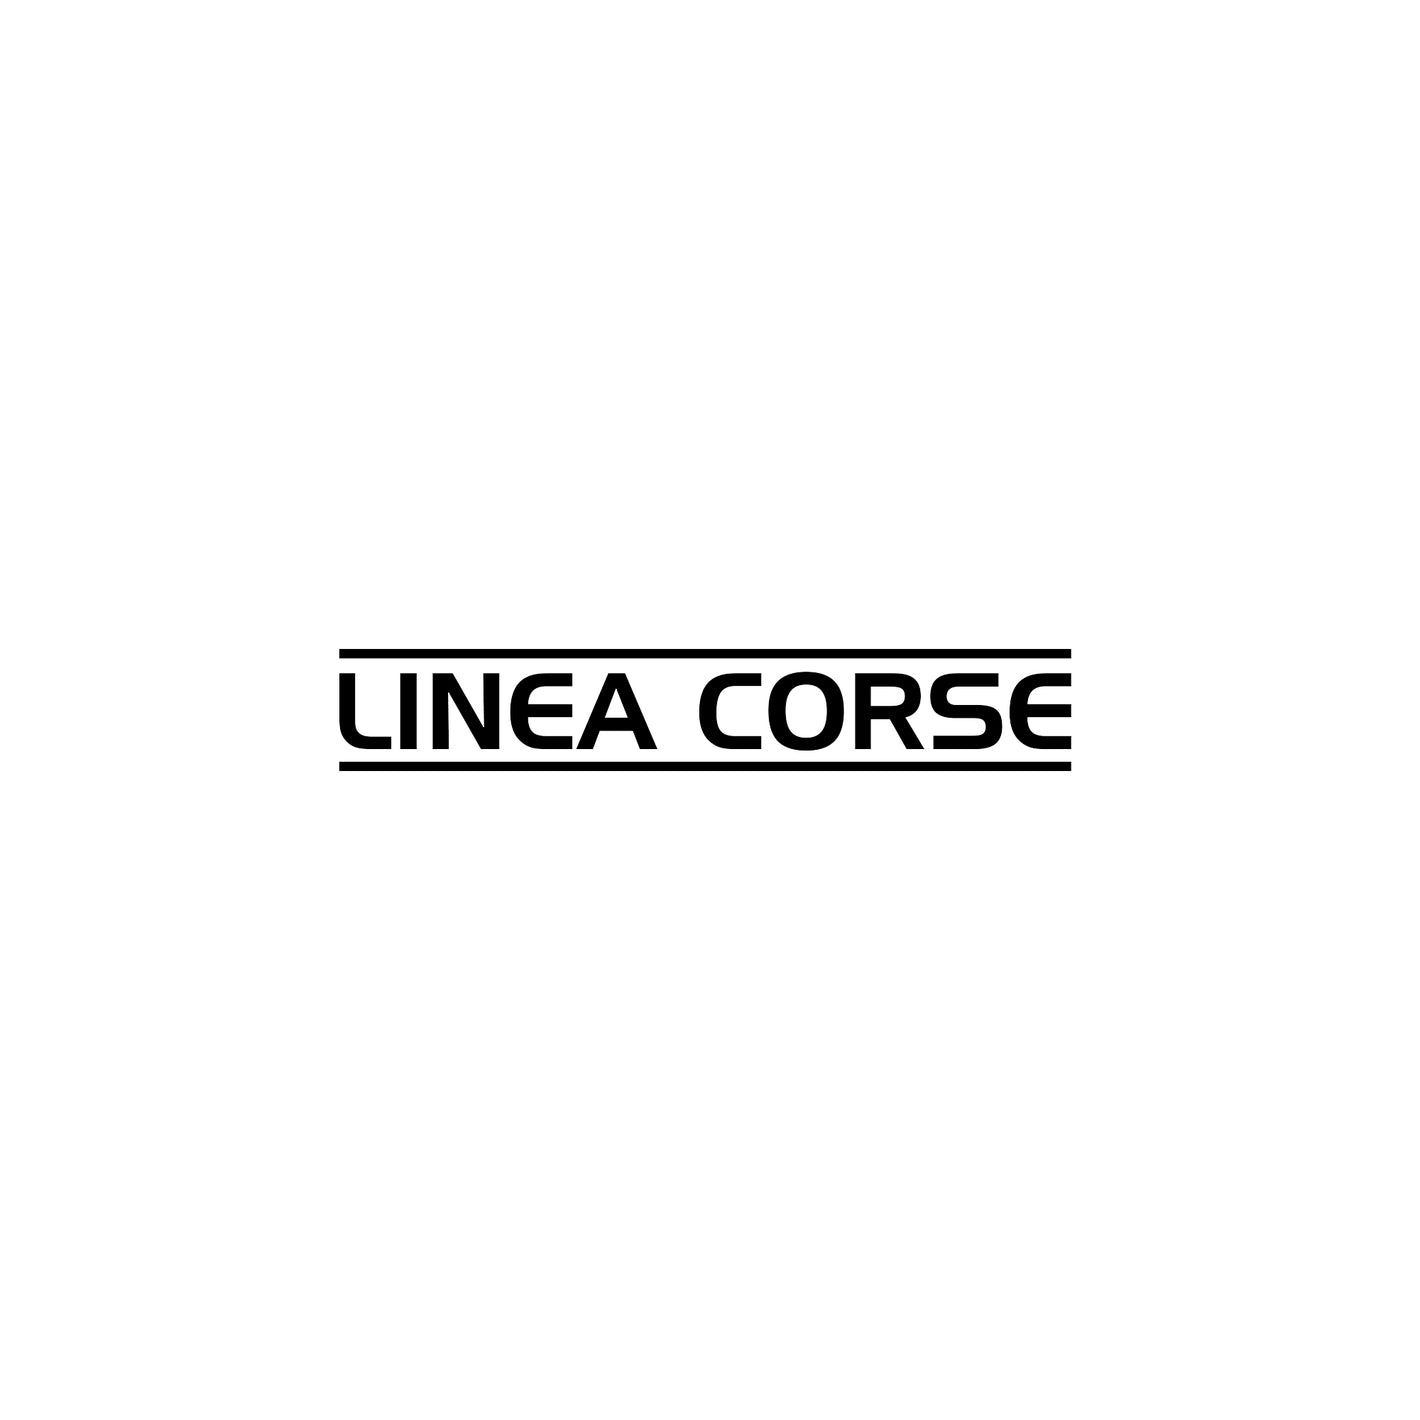 Linea Corse